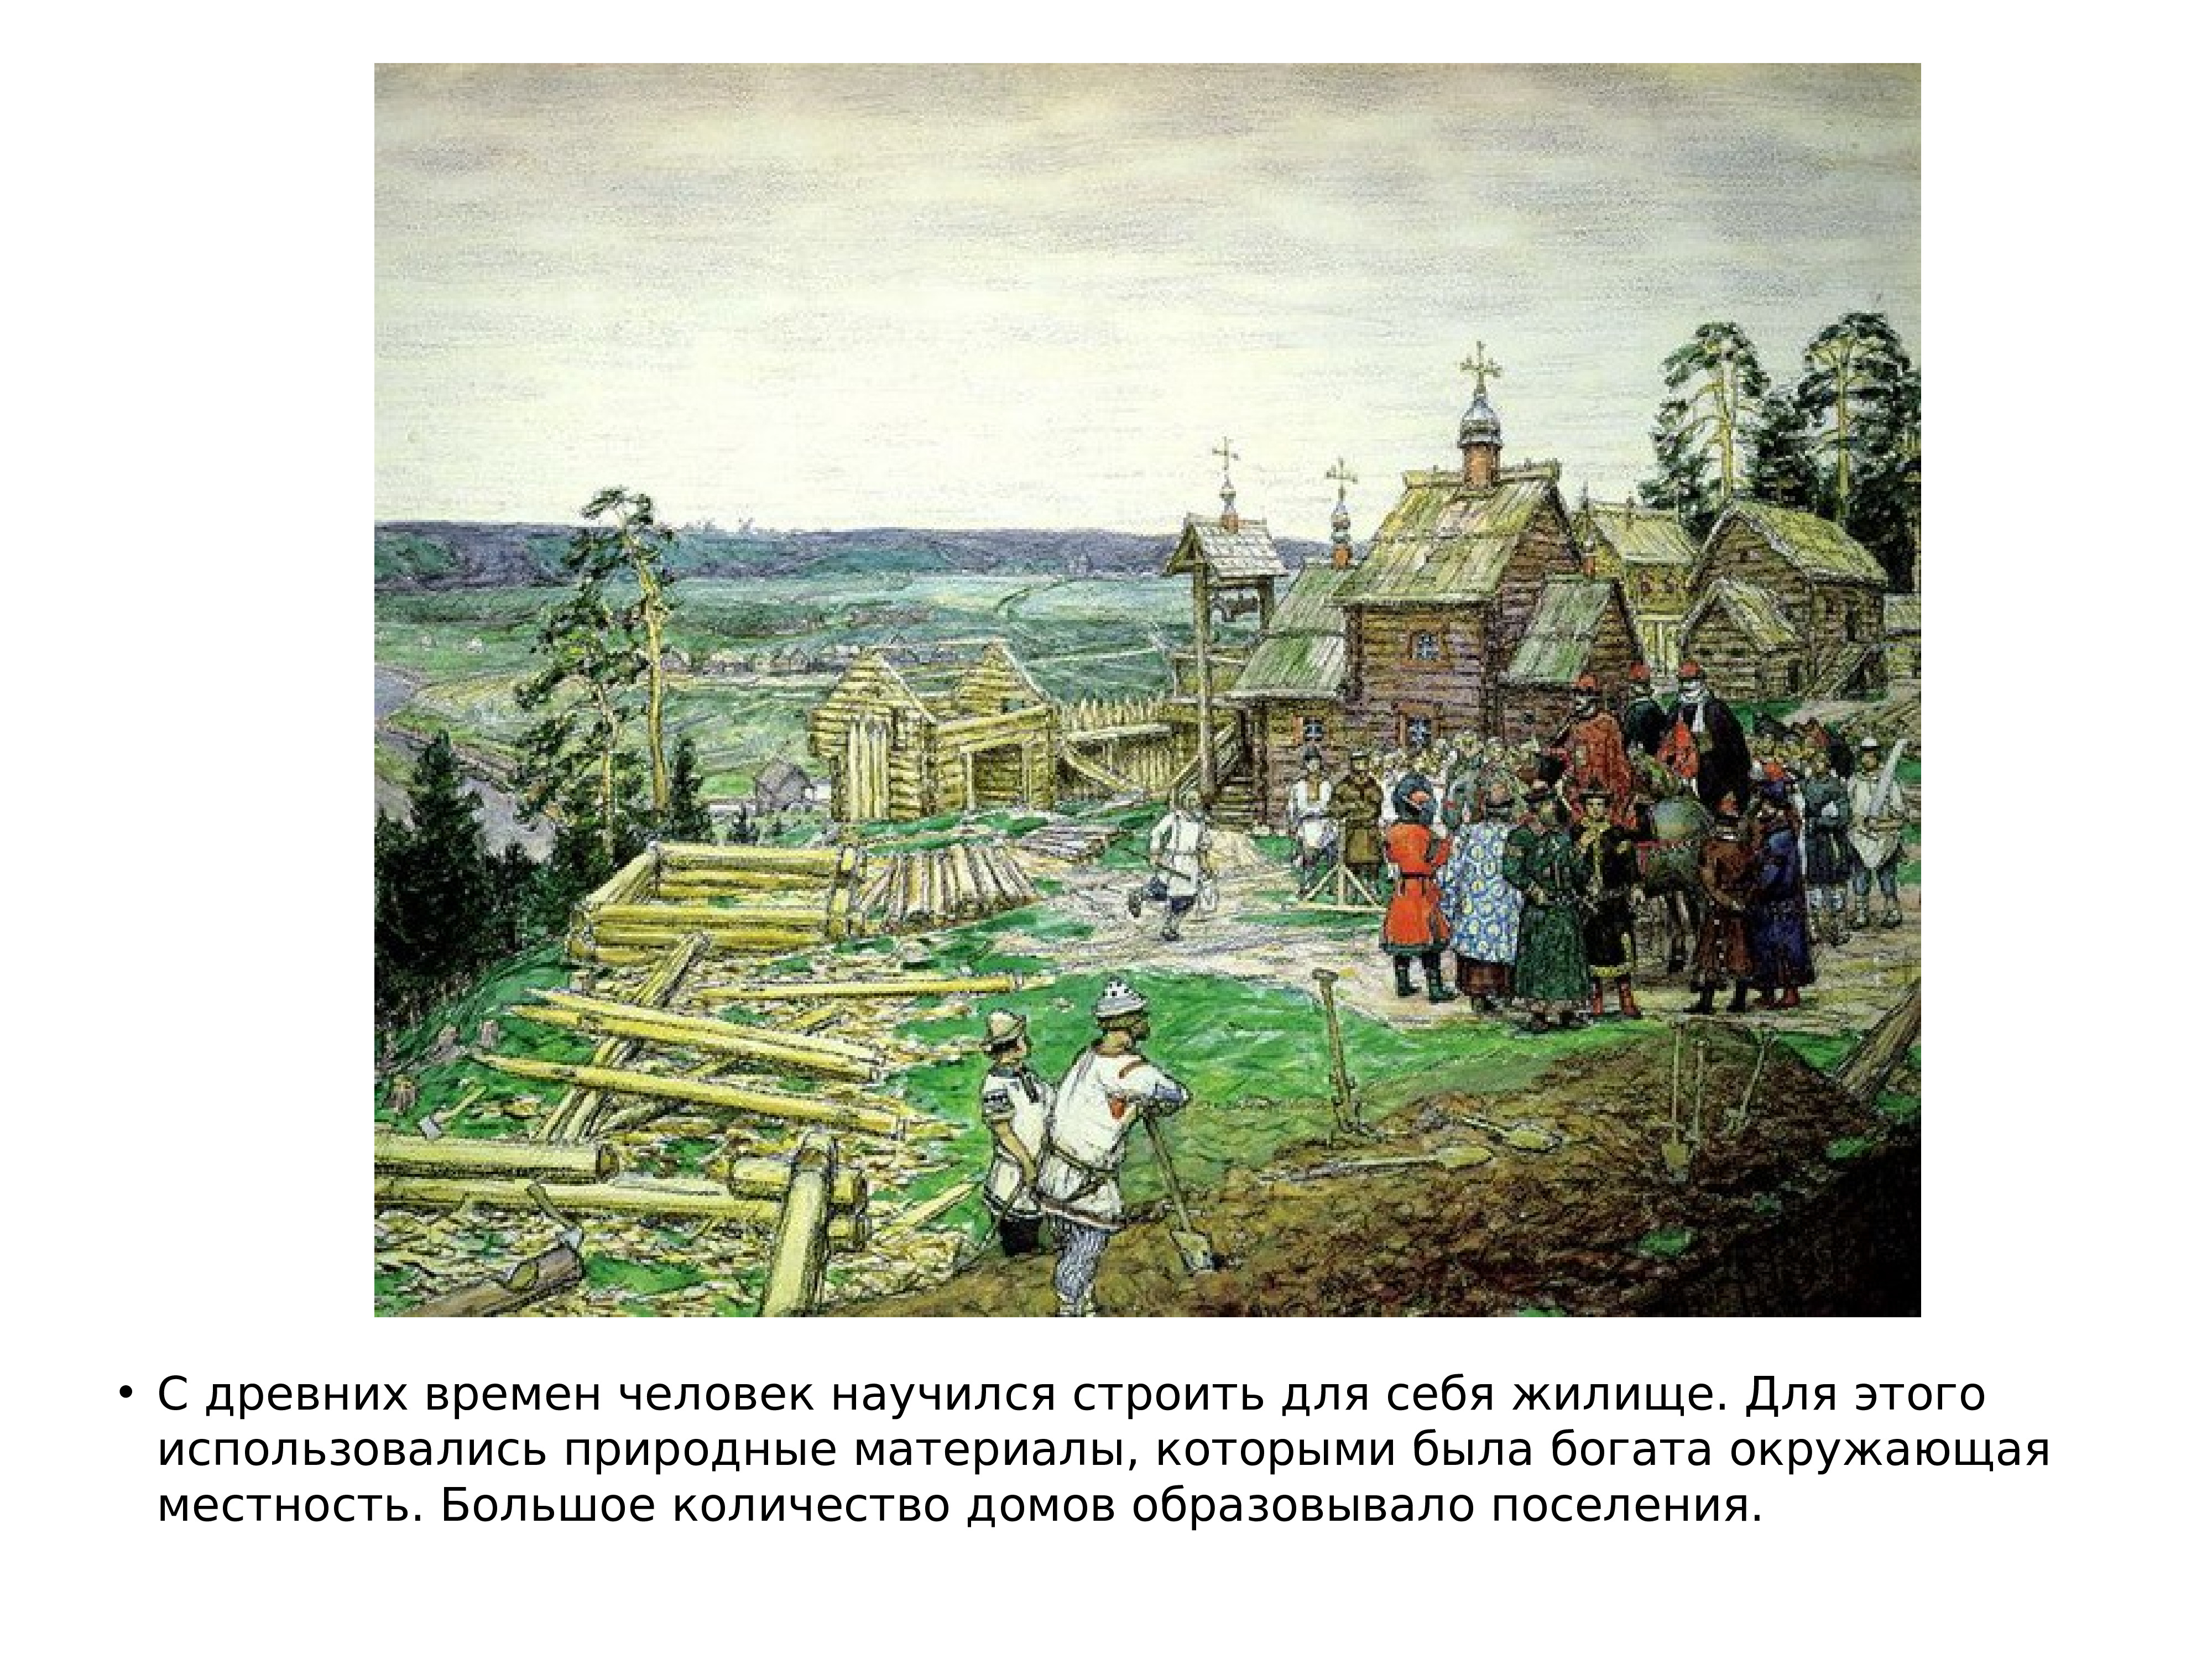 Дата строительства москвы. Основание Москвы 1147 Юрием Долгоруким. А Васнецов Москва 1147.